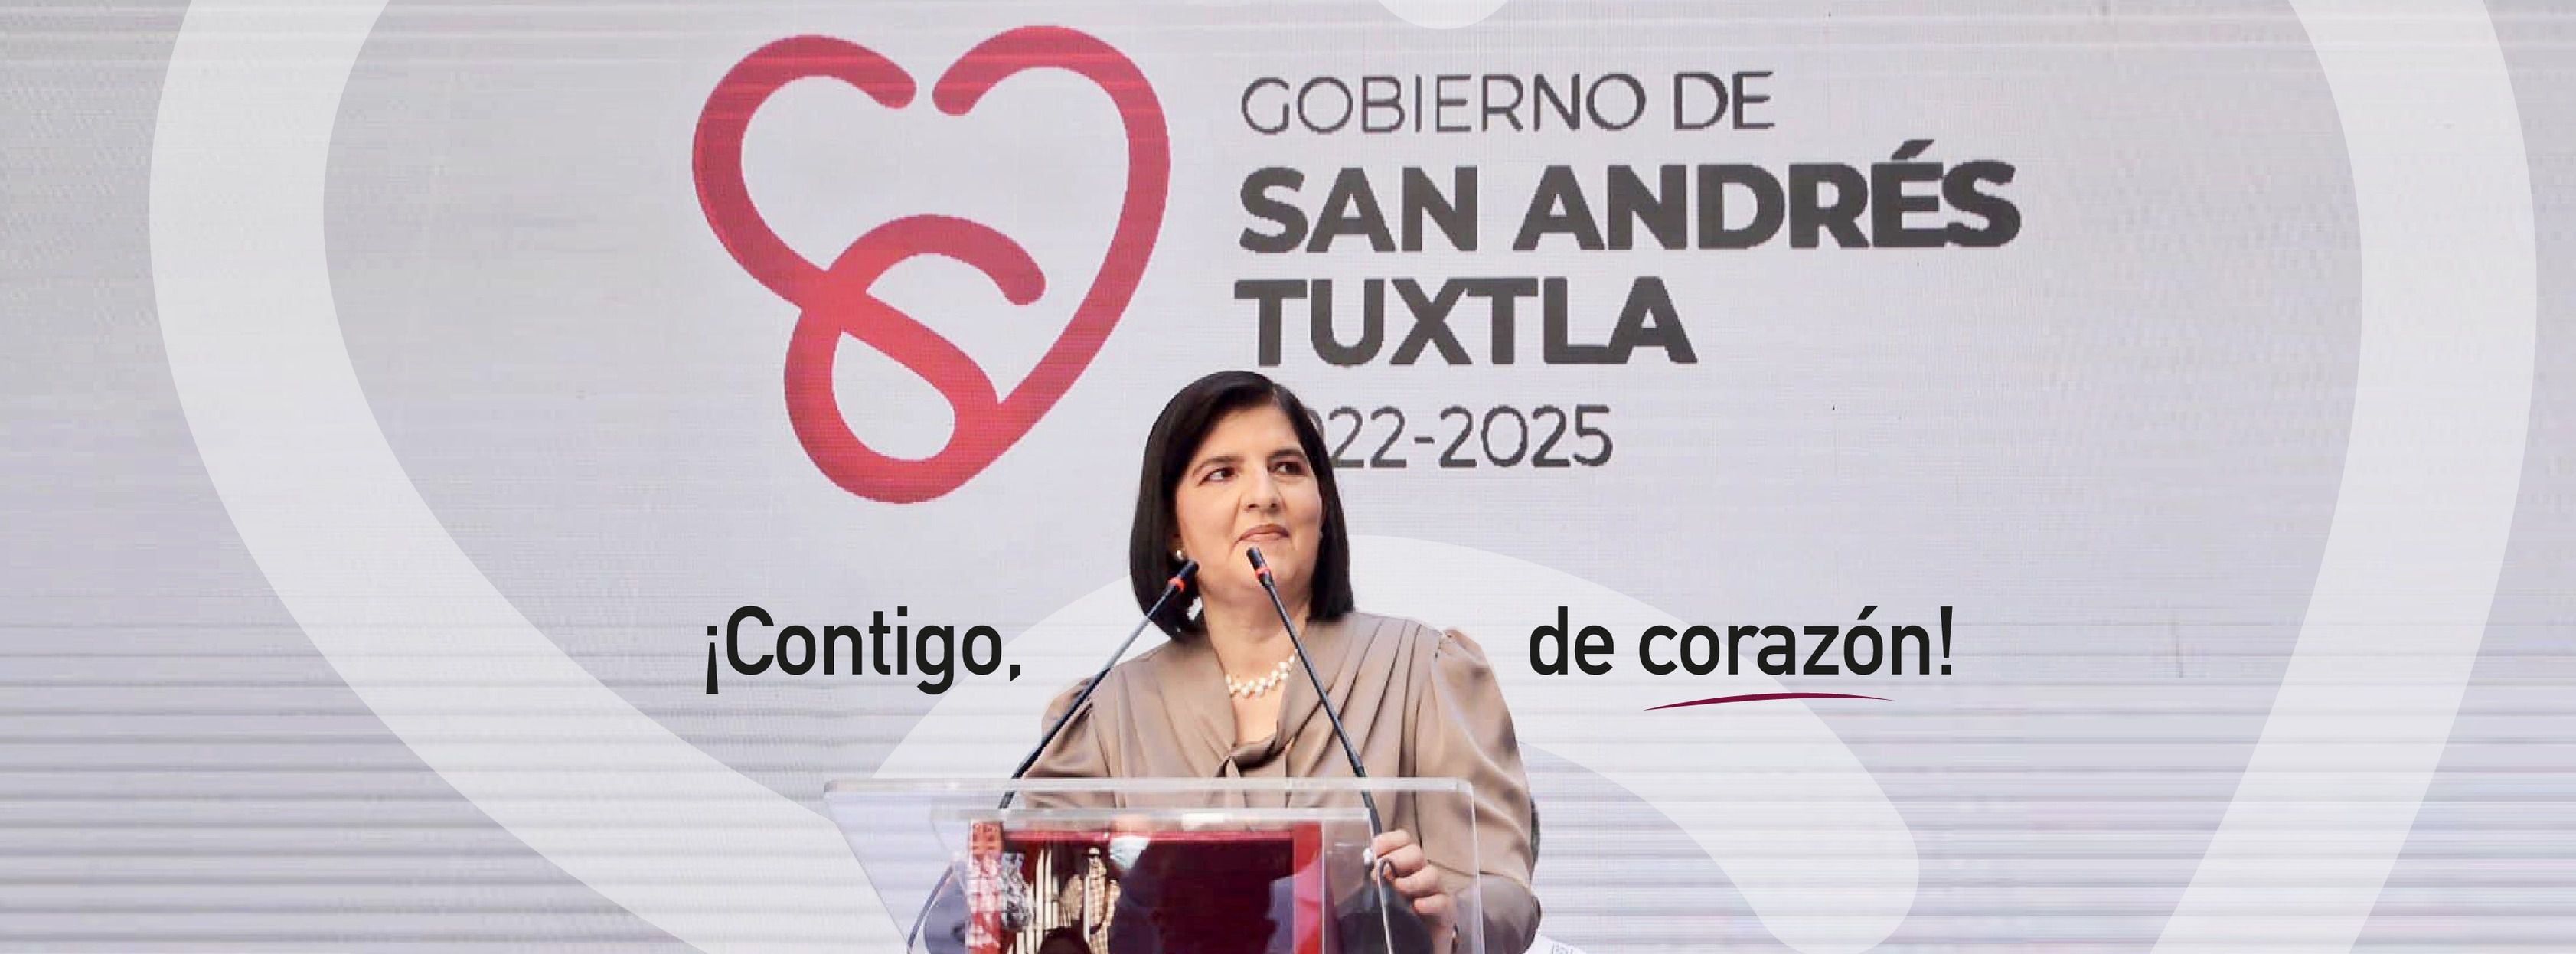 Maria Elena Solana Calzada fue electa alcaldesa en el 2021 de la mano de Morena, PT y PVEM. (Facebook: Dra Maria Elena Solana Calzada - Dra Remedios)